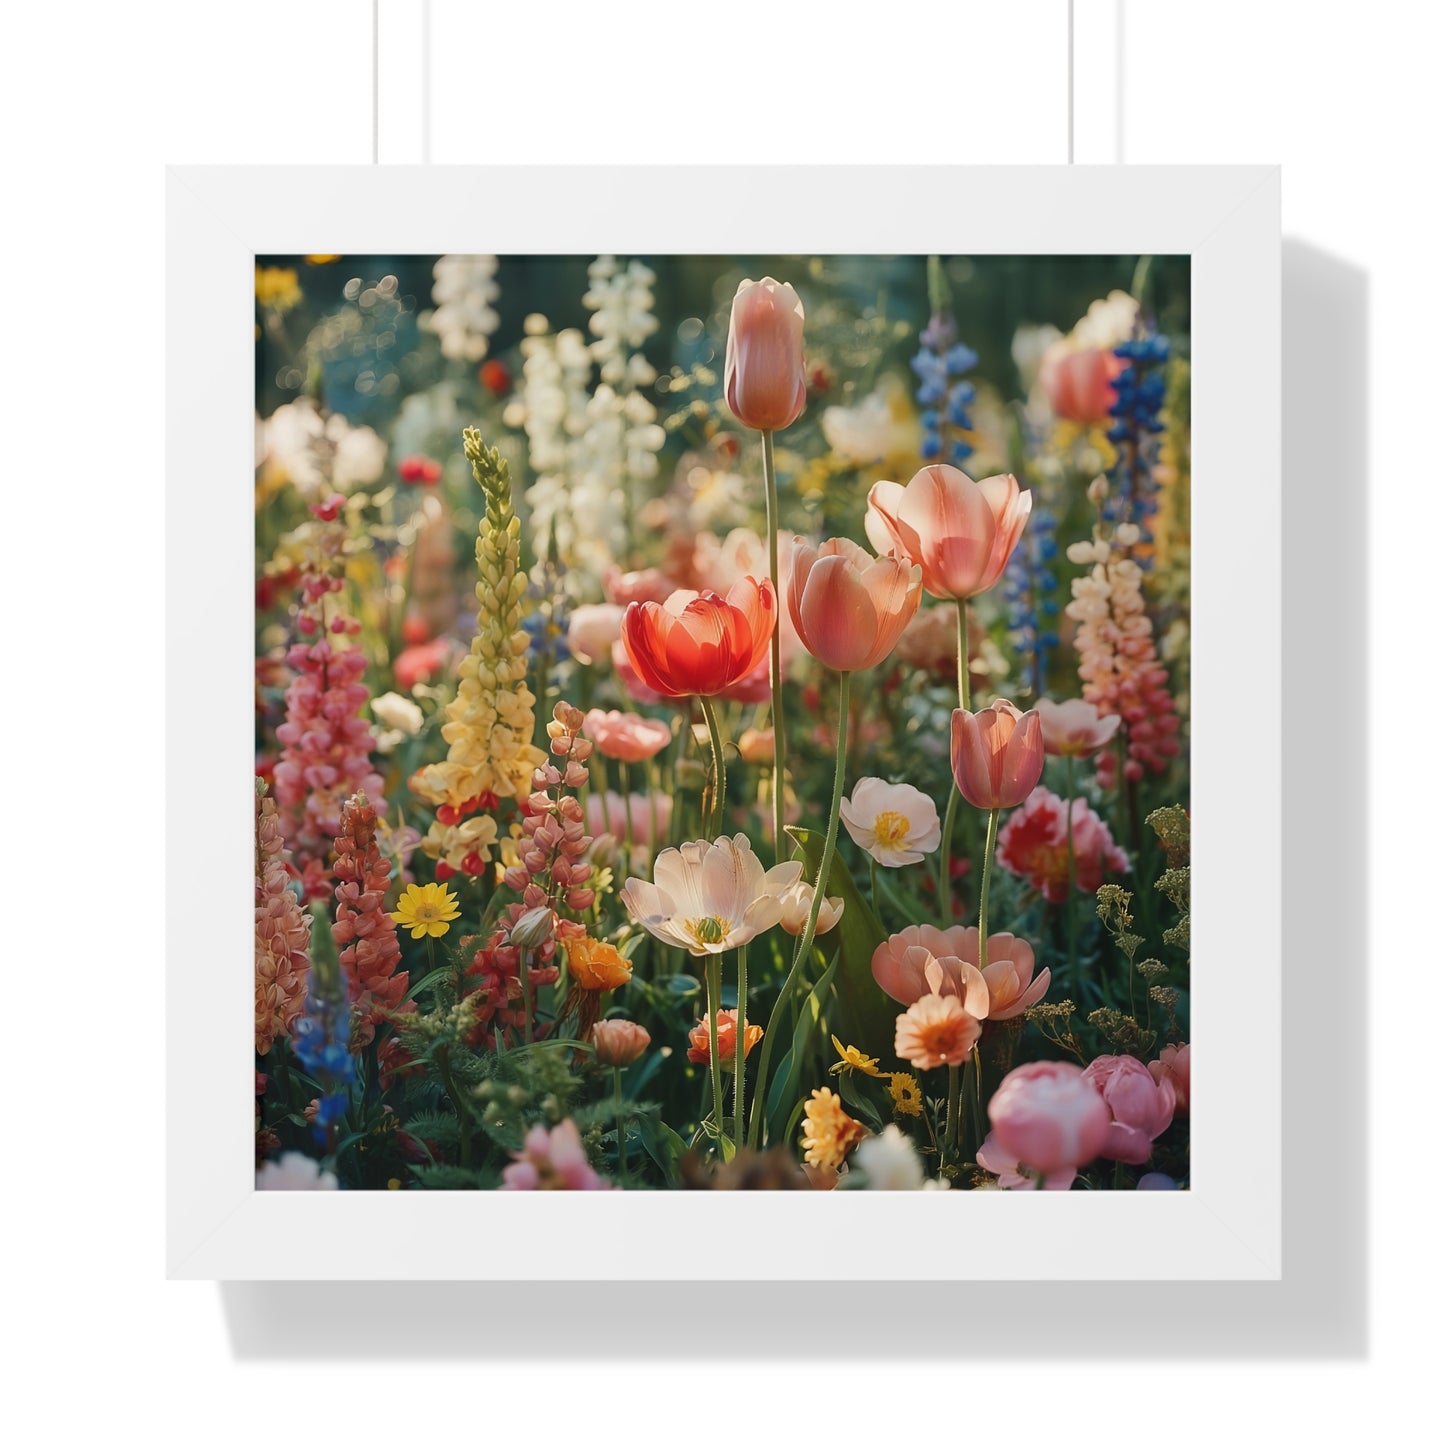 Colorful Spring Garden Framed Vertical Poster